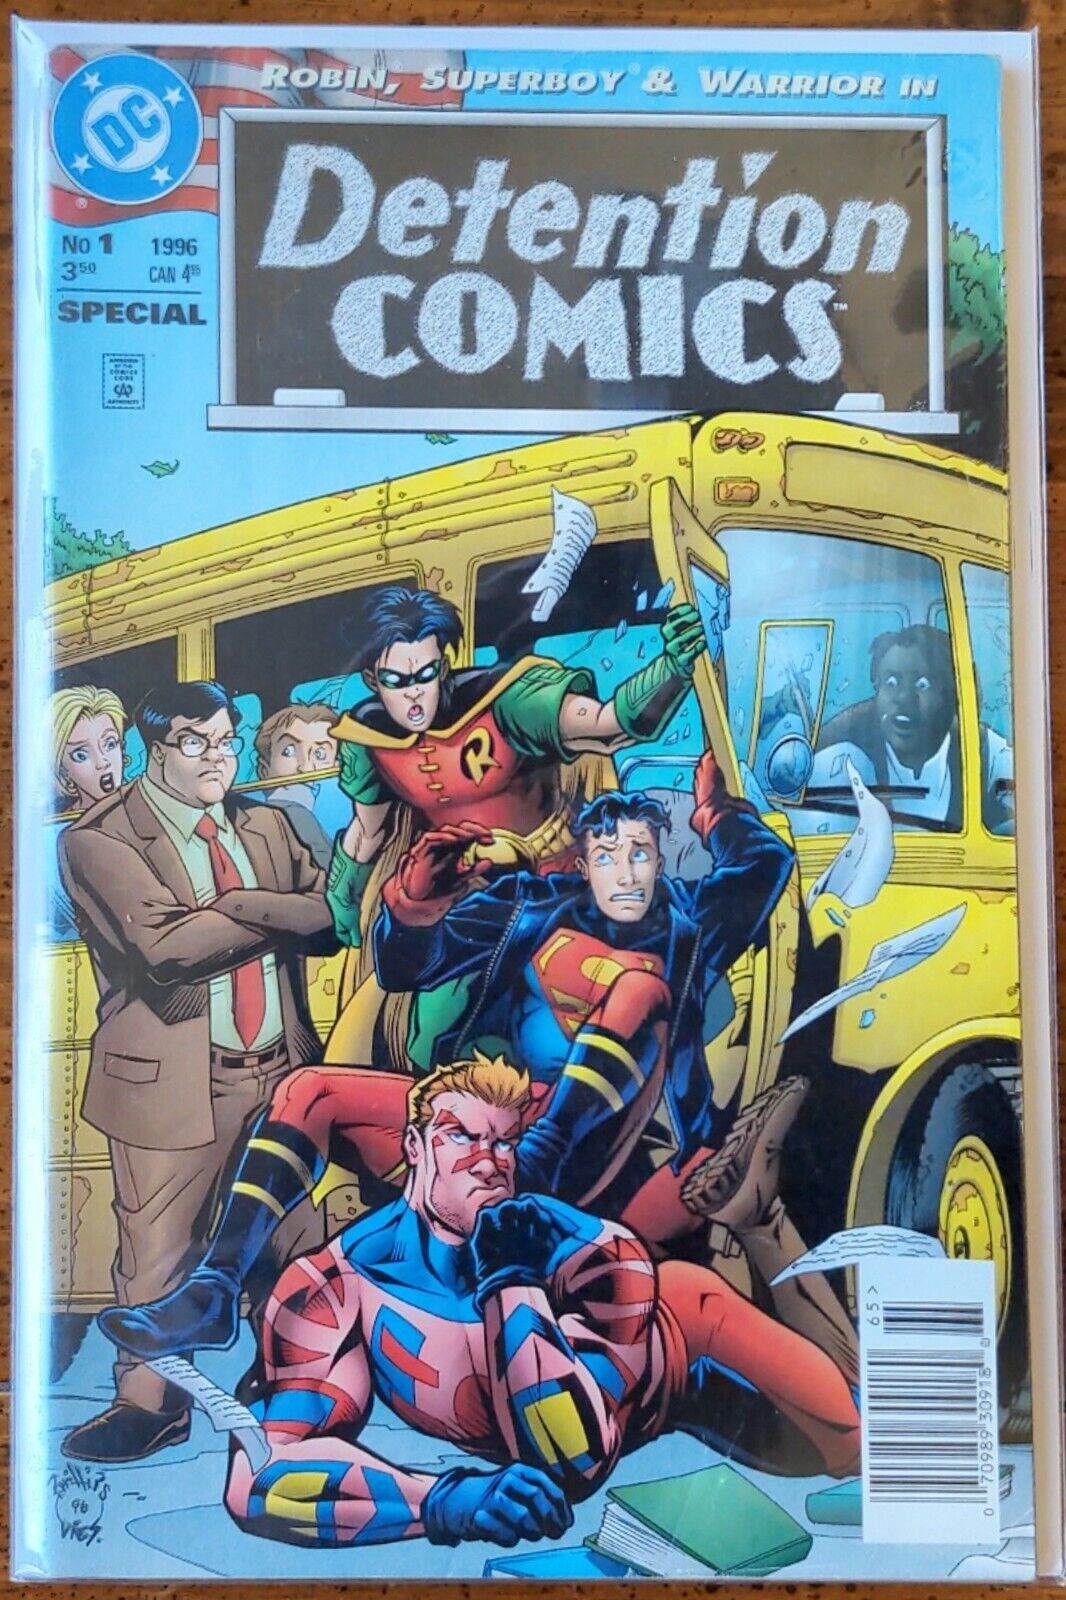 DETENTION COMICS. NO.1. ROBIN, SUPERBOY & WARRIOR. DC COMICS. 1996. RON LIM-ART.